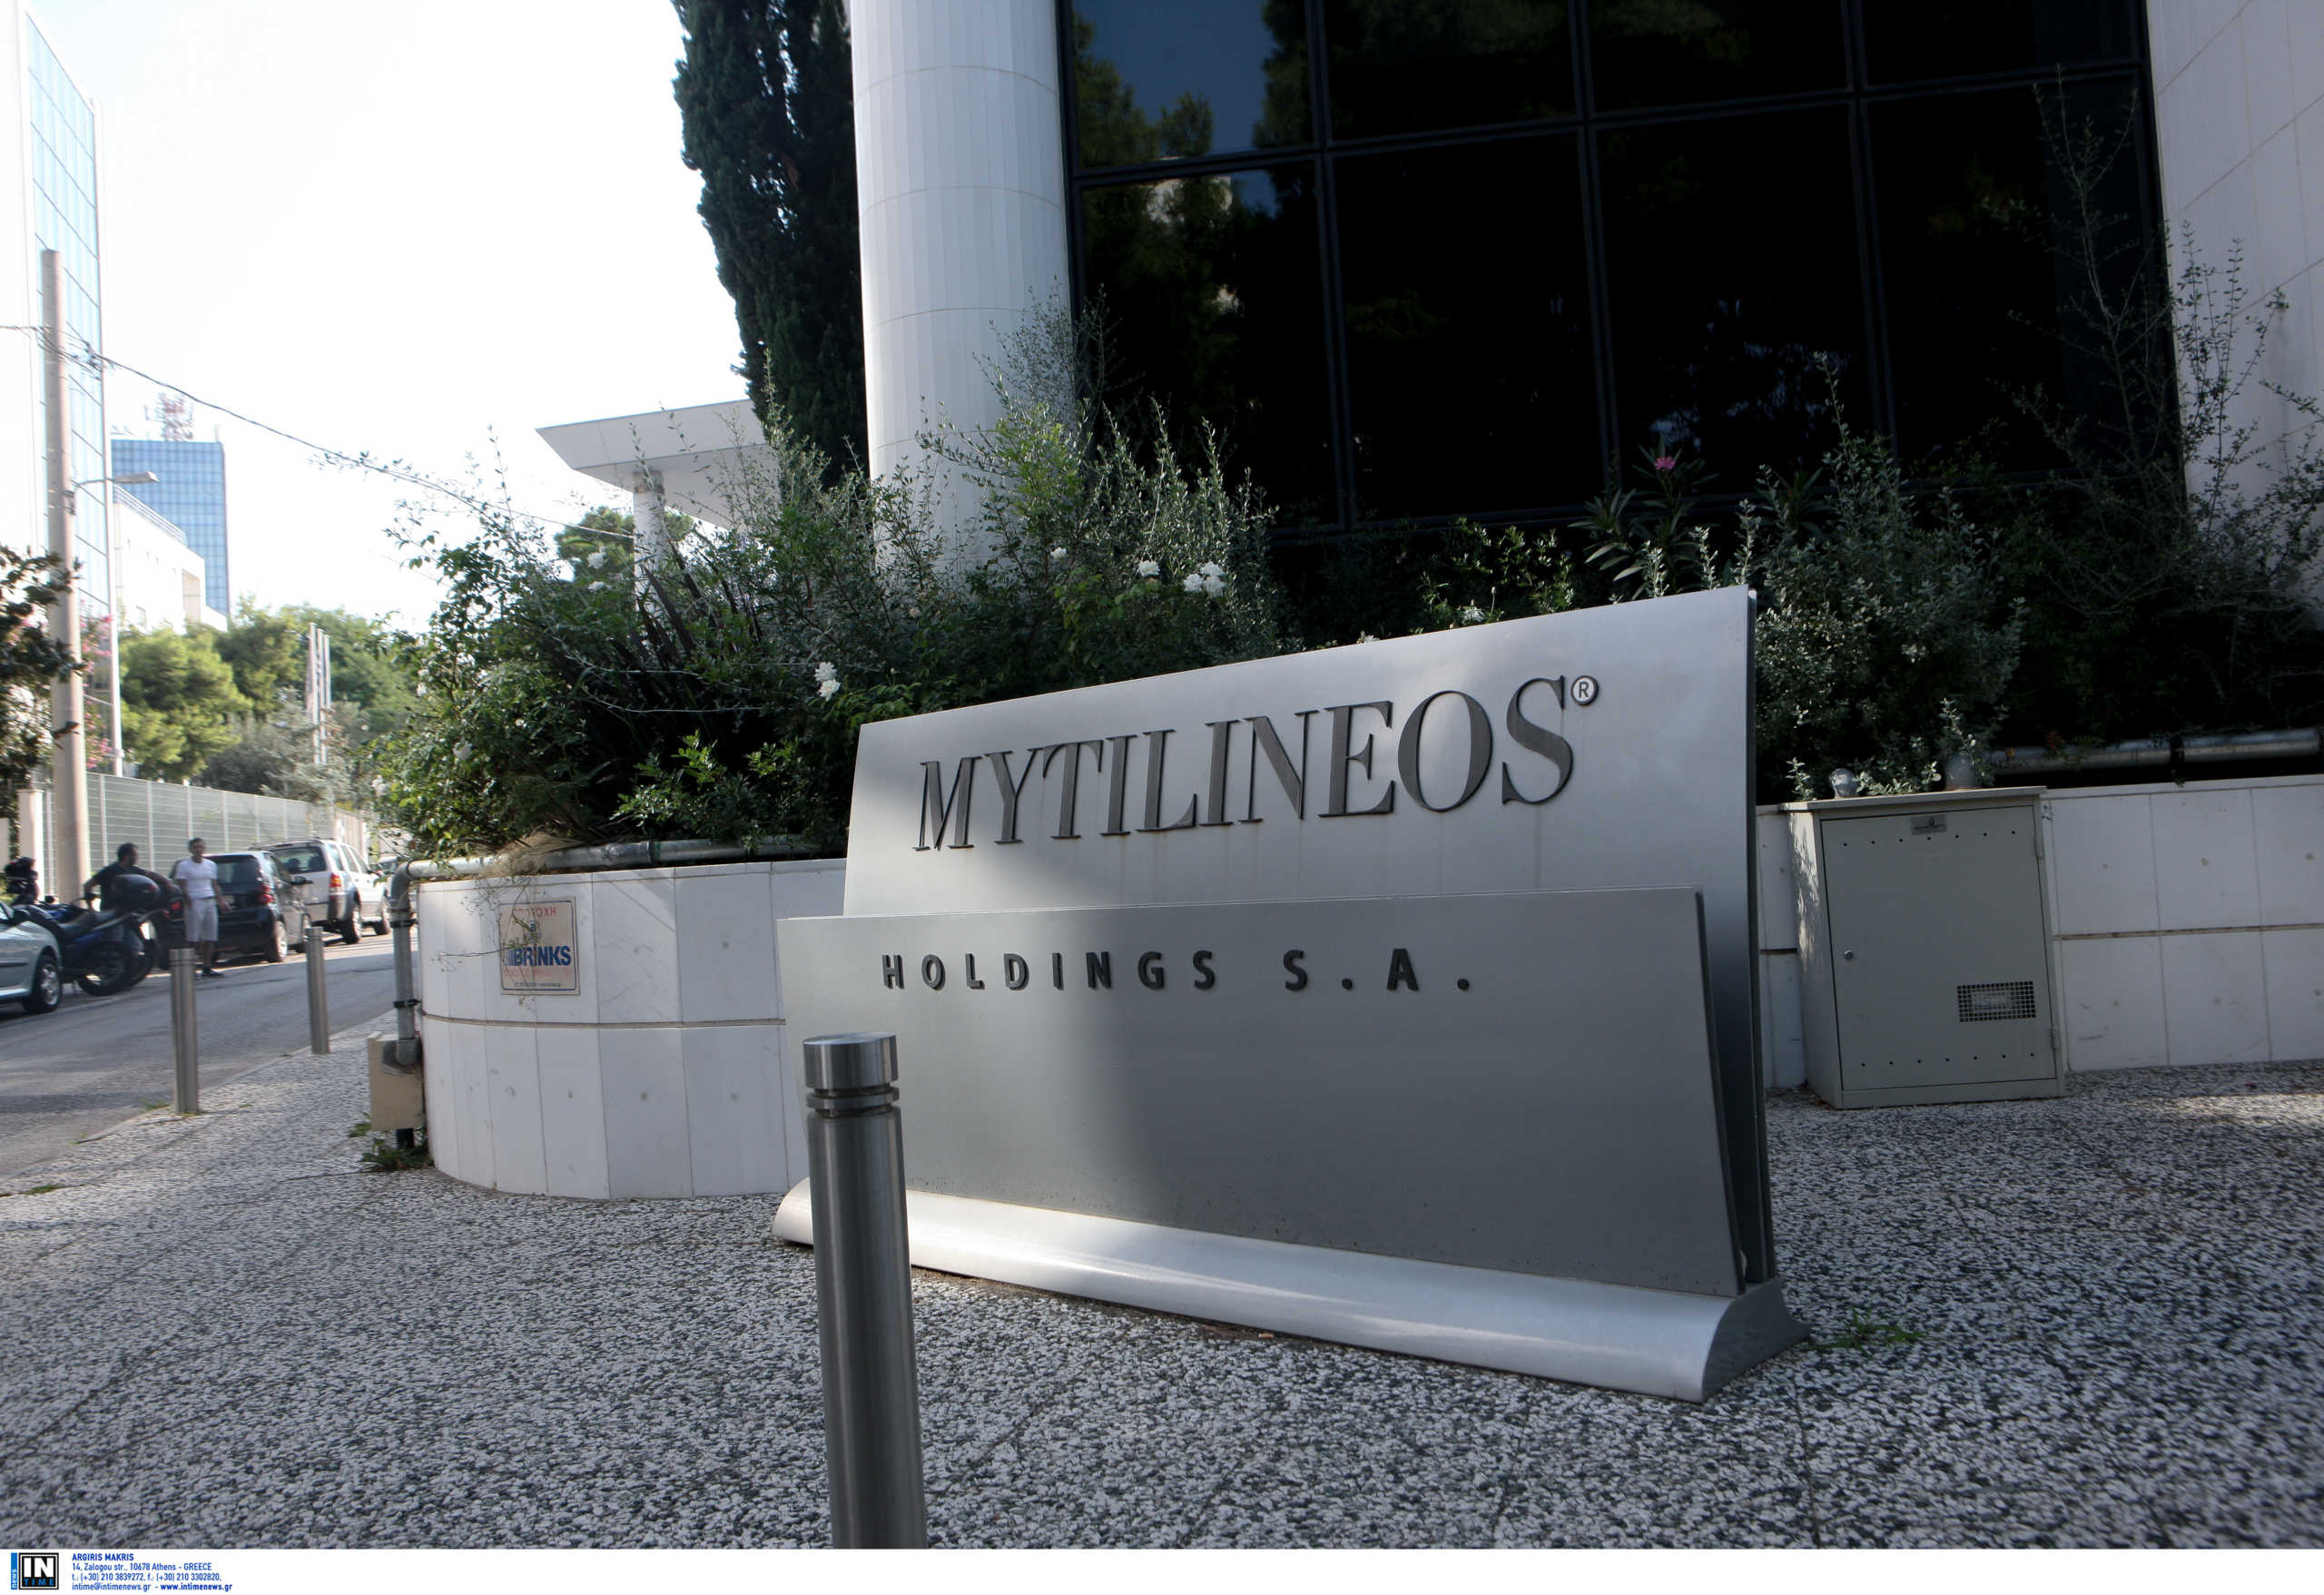 Μytilineos: Συνεργασία με CIP για την ανάπτυξη υπεράκτιων αιολικών πάρκων στην Ελλάδα